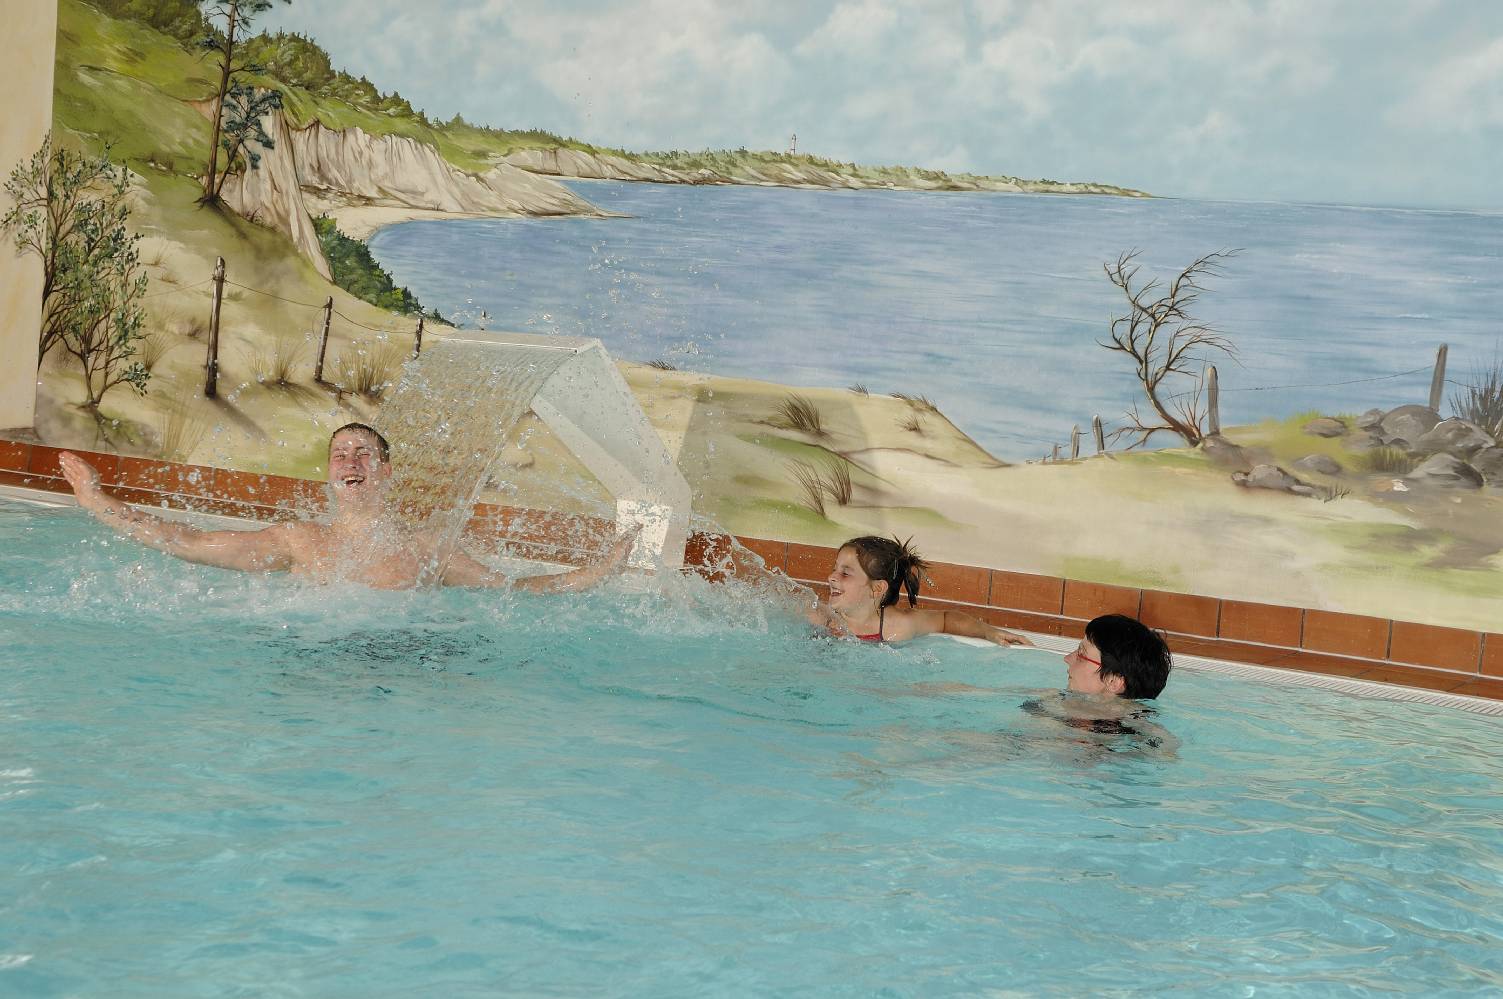 Sie möchten Wellness mit Schwimmbad? Dann kommen Sie gerne zu unserem Hotel "Am See" in Plau am See!